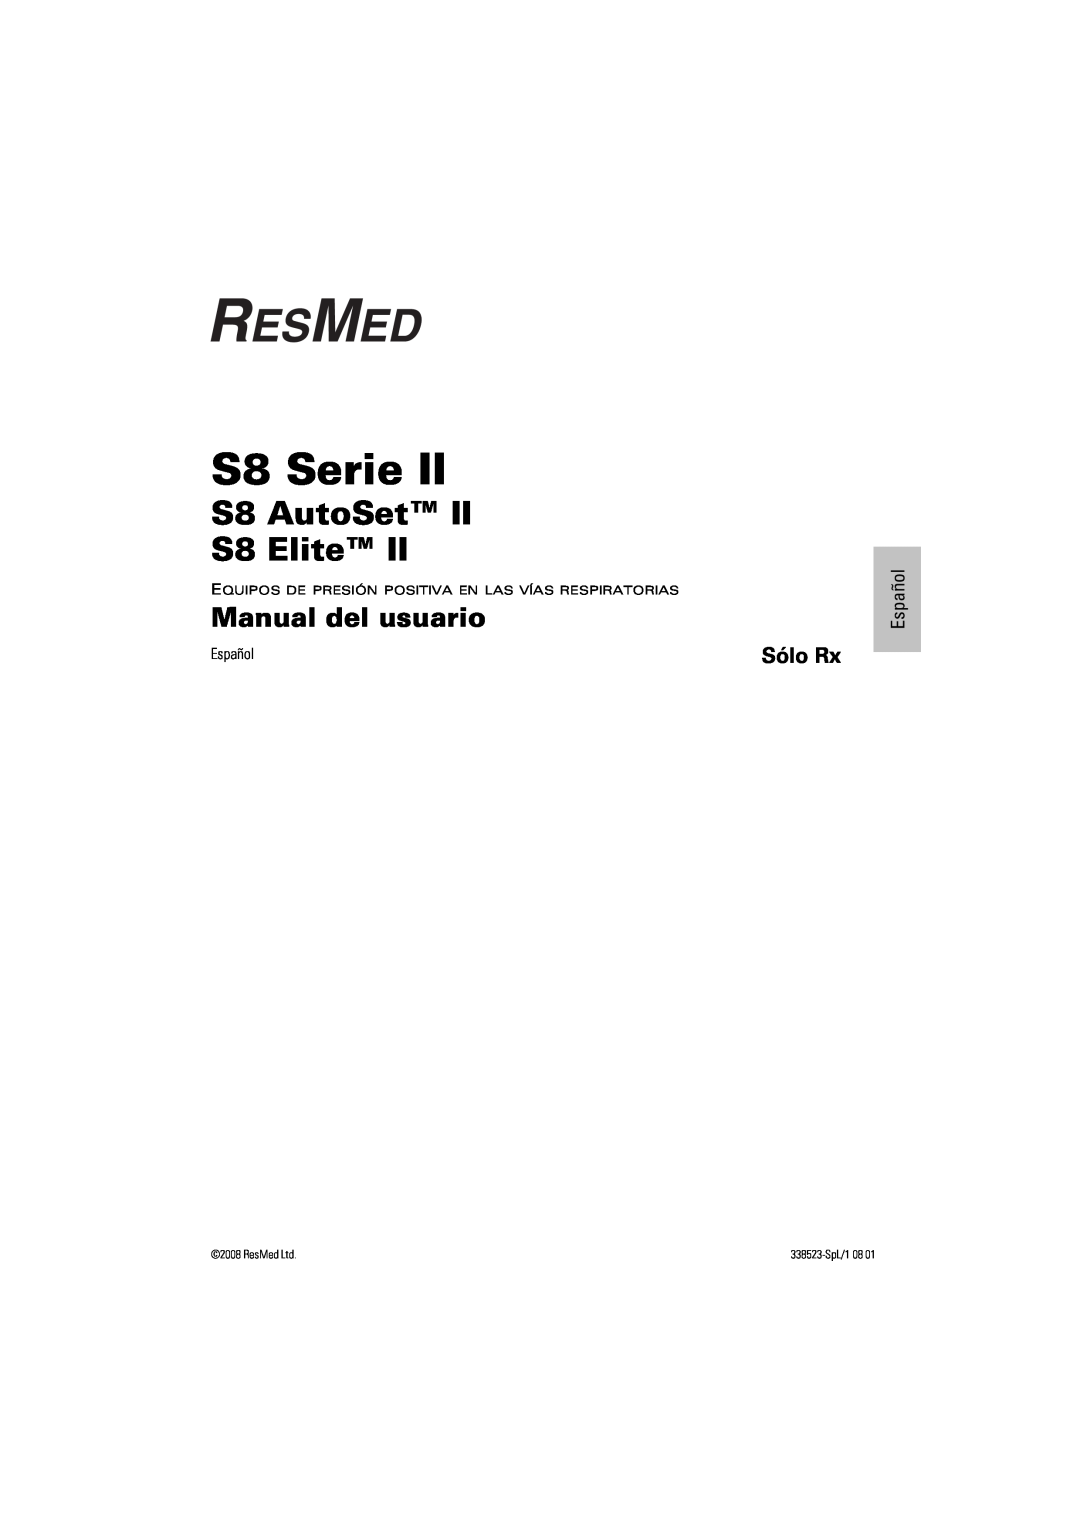 ResMed s8 manual S8 Serie, Manual del usuario, Sólo Rx, Español, S8 AutoSet S8 Elite, 338523-SpL/108 